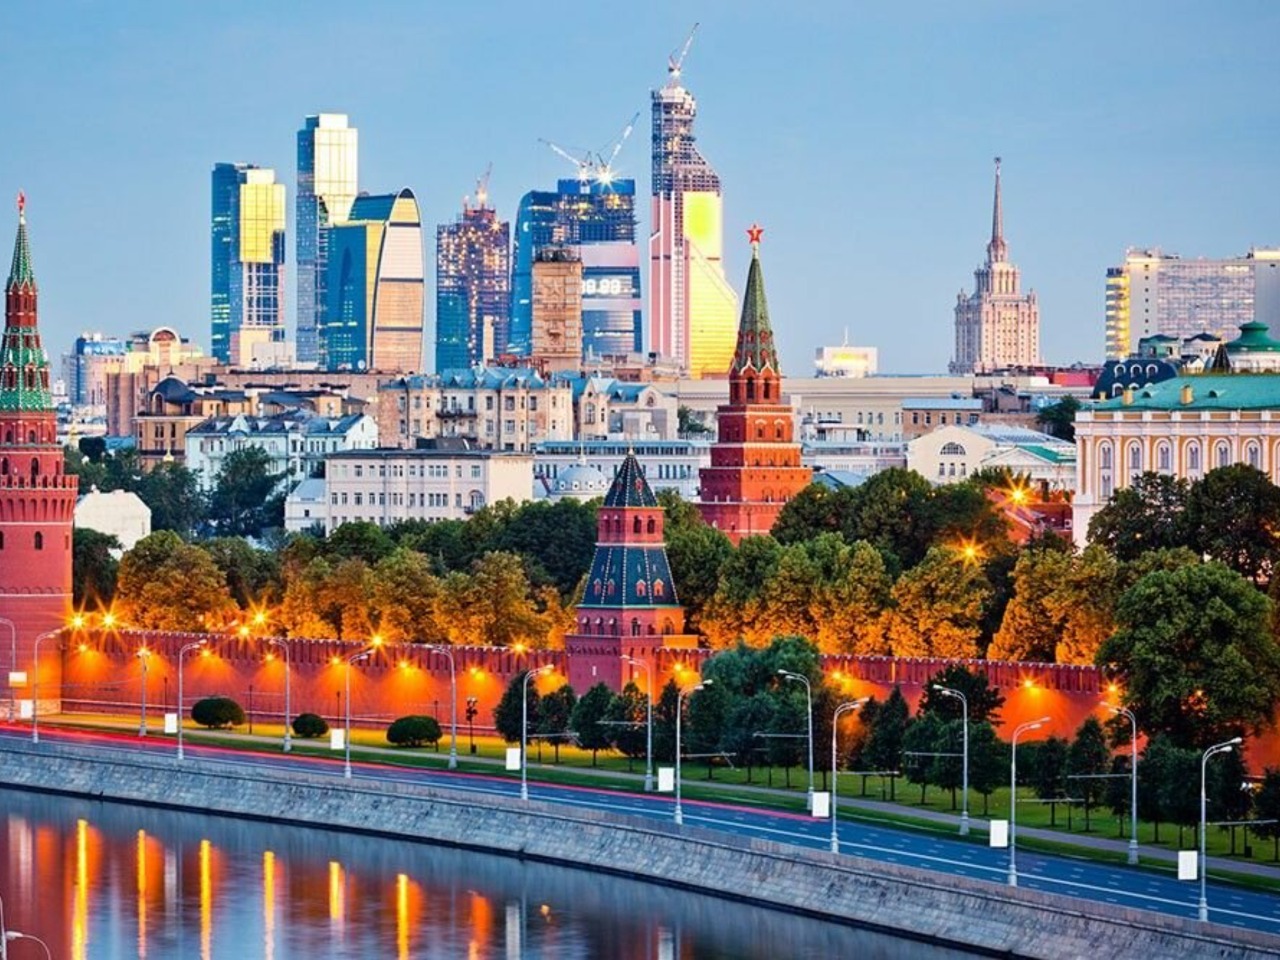 Обзорная по Москве: лучшие видовые площадки | Цена 1375₽, отзывы, описание экскурсии